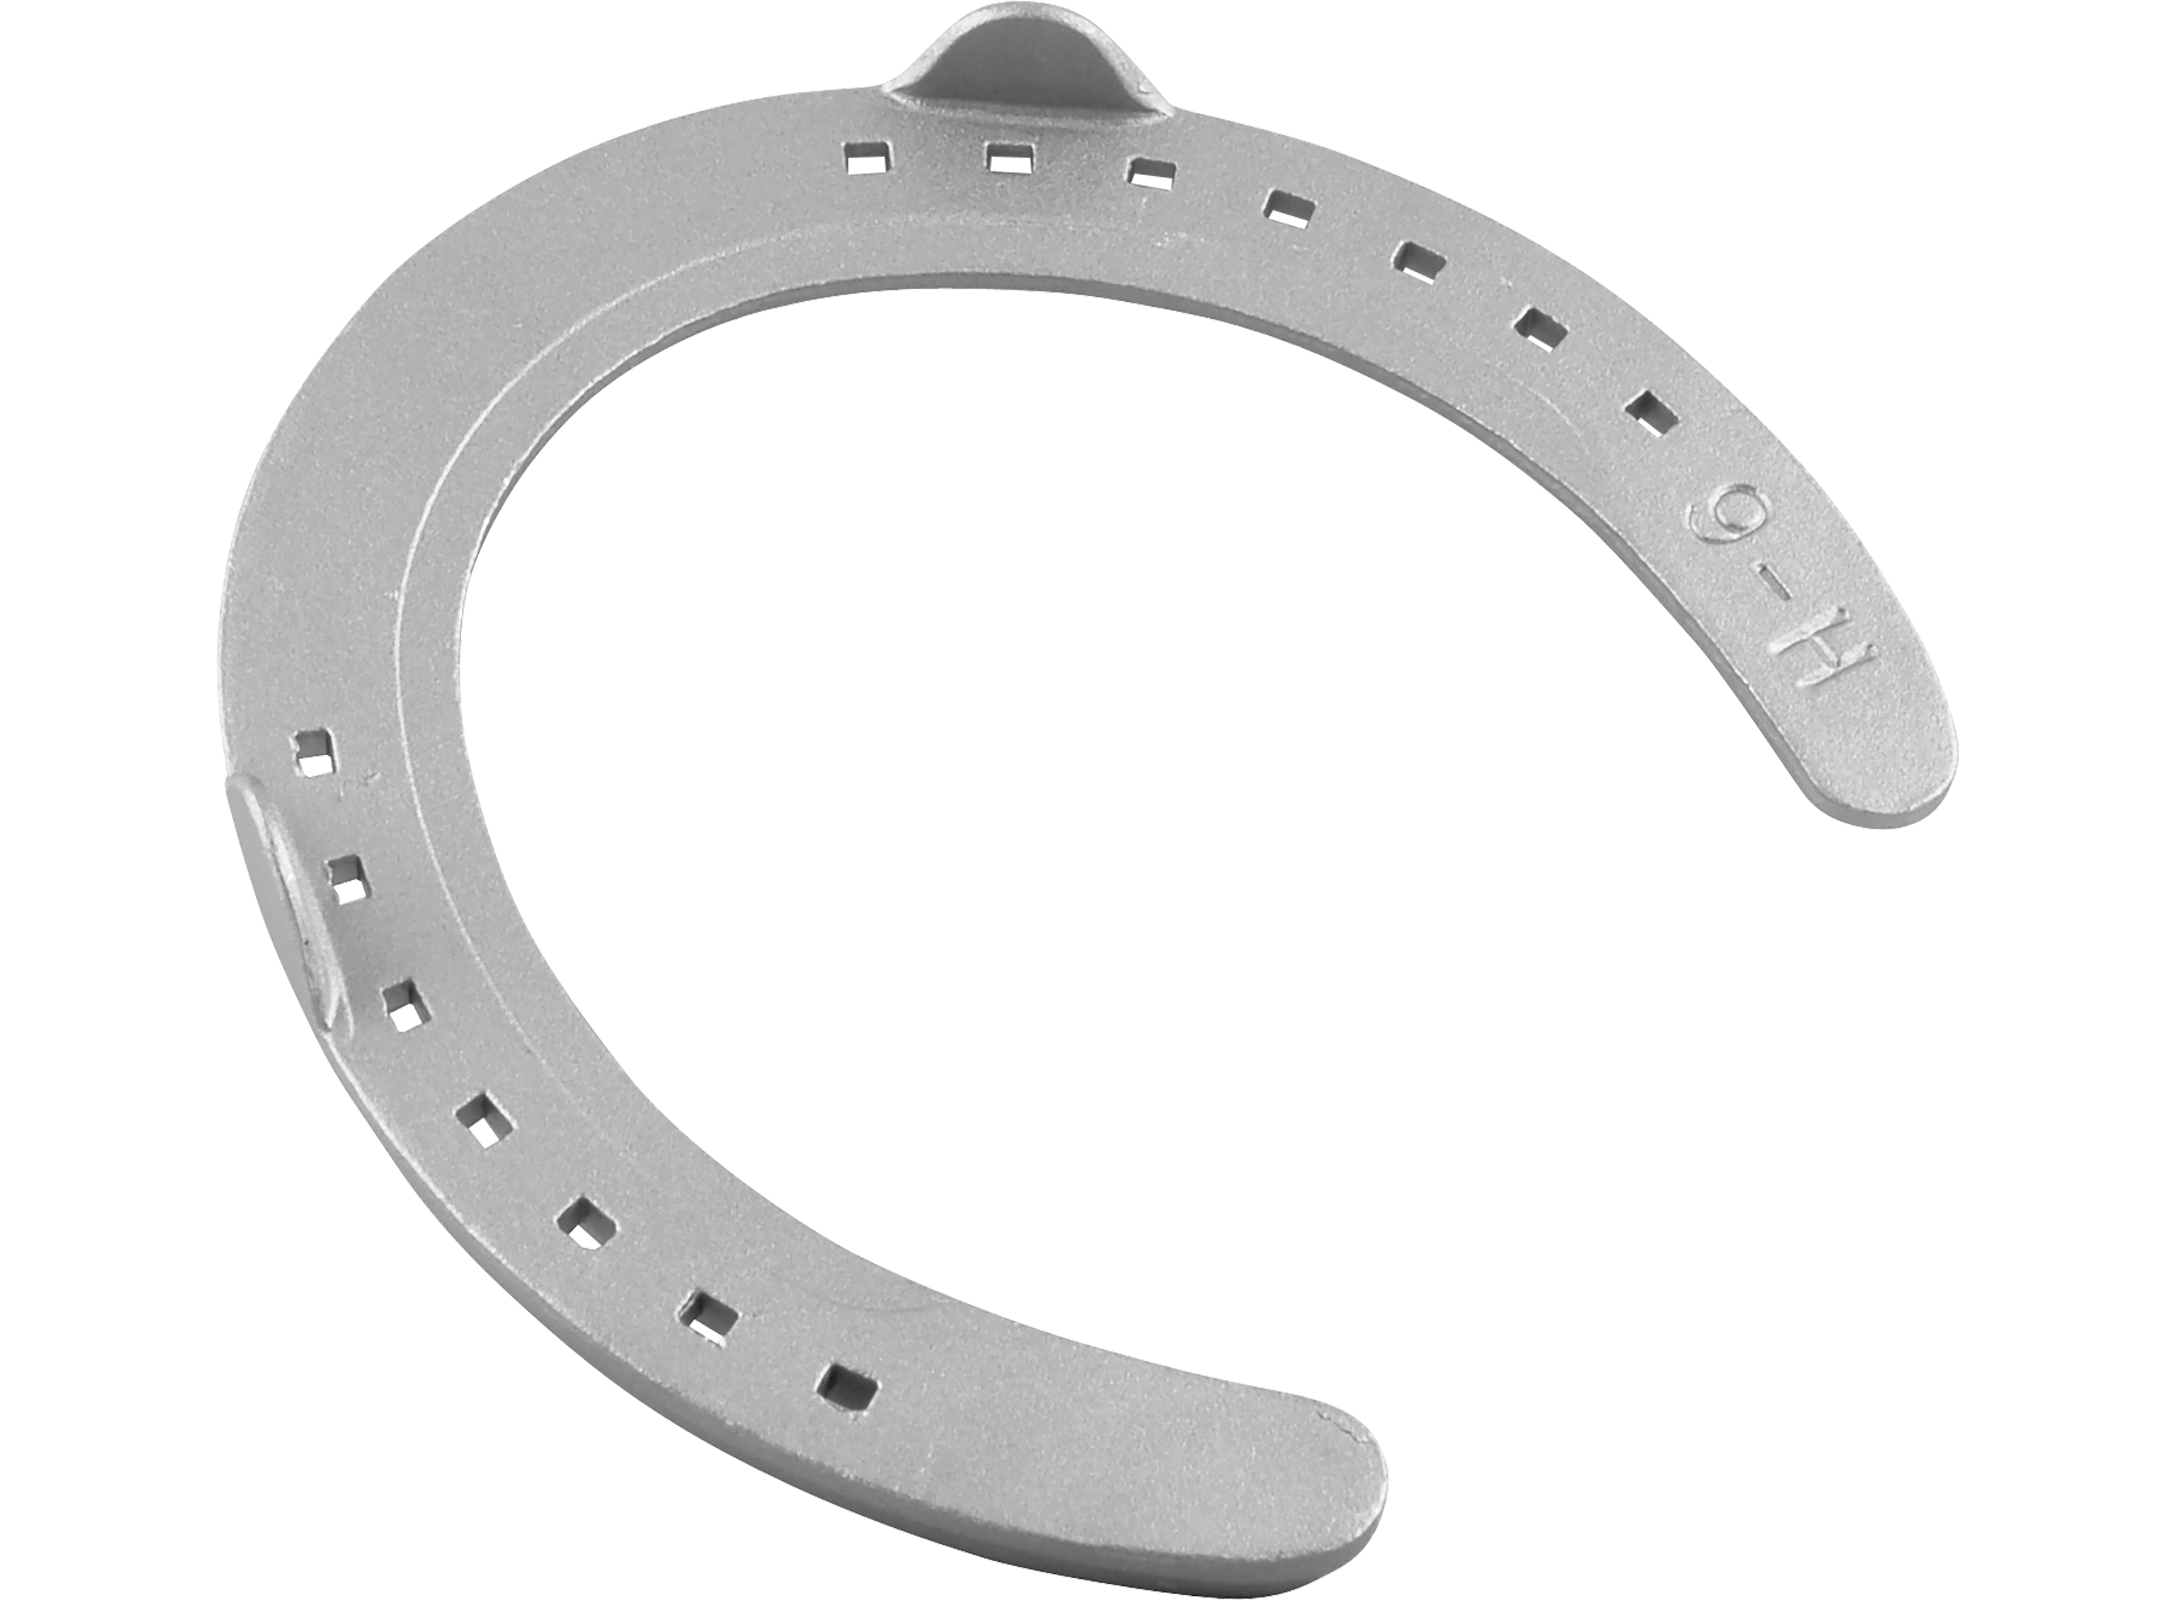 St. Croix Regular Toe horseshoe, hind, 3D hoof side view